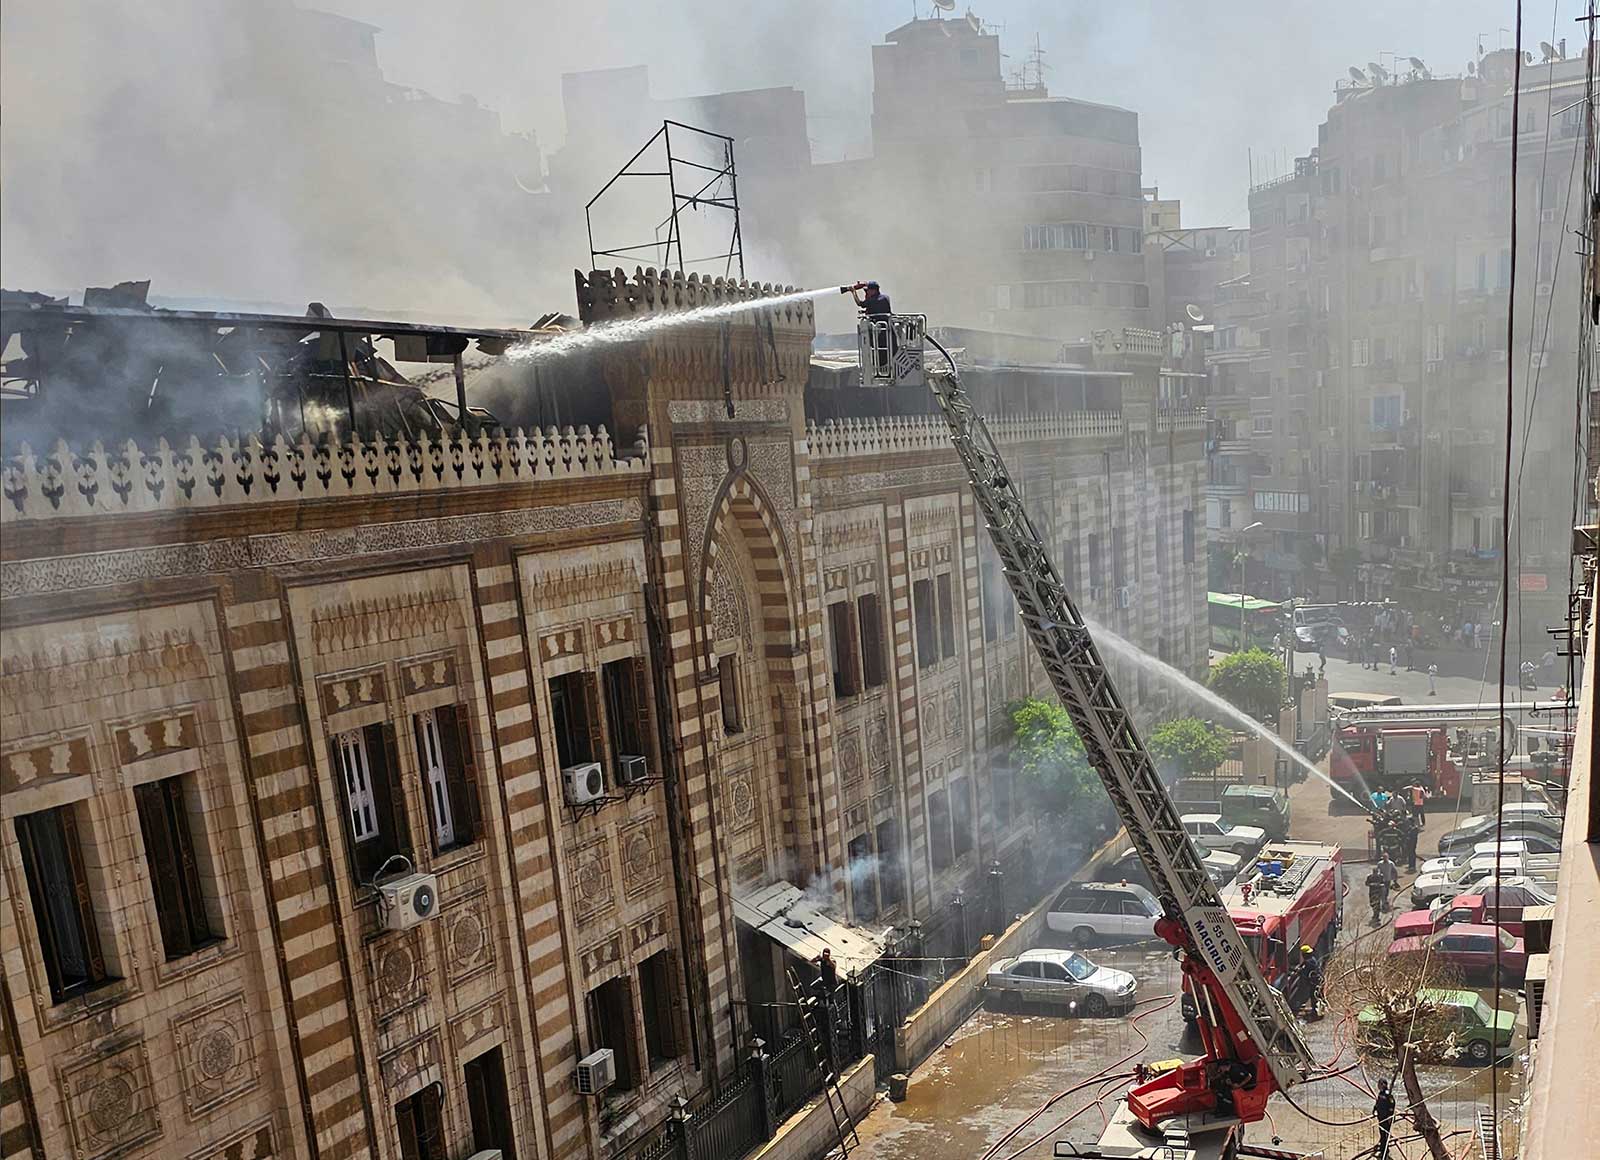 النيران تشتعل بمبنى وزارة الأوقاف التاريخي في القاهرة